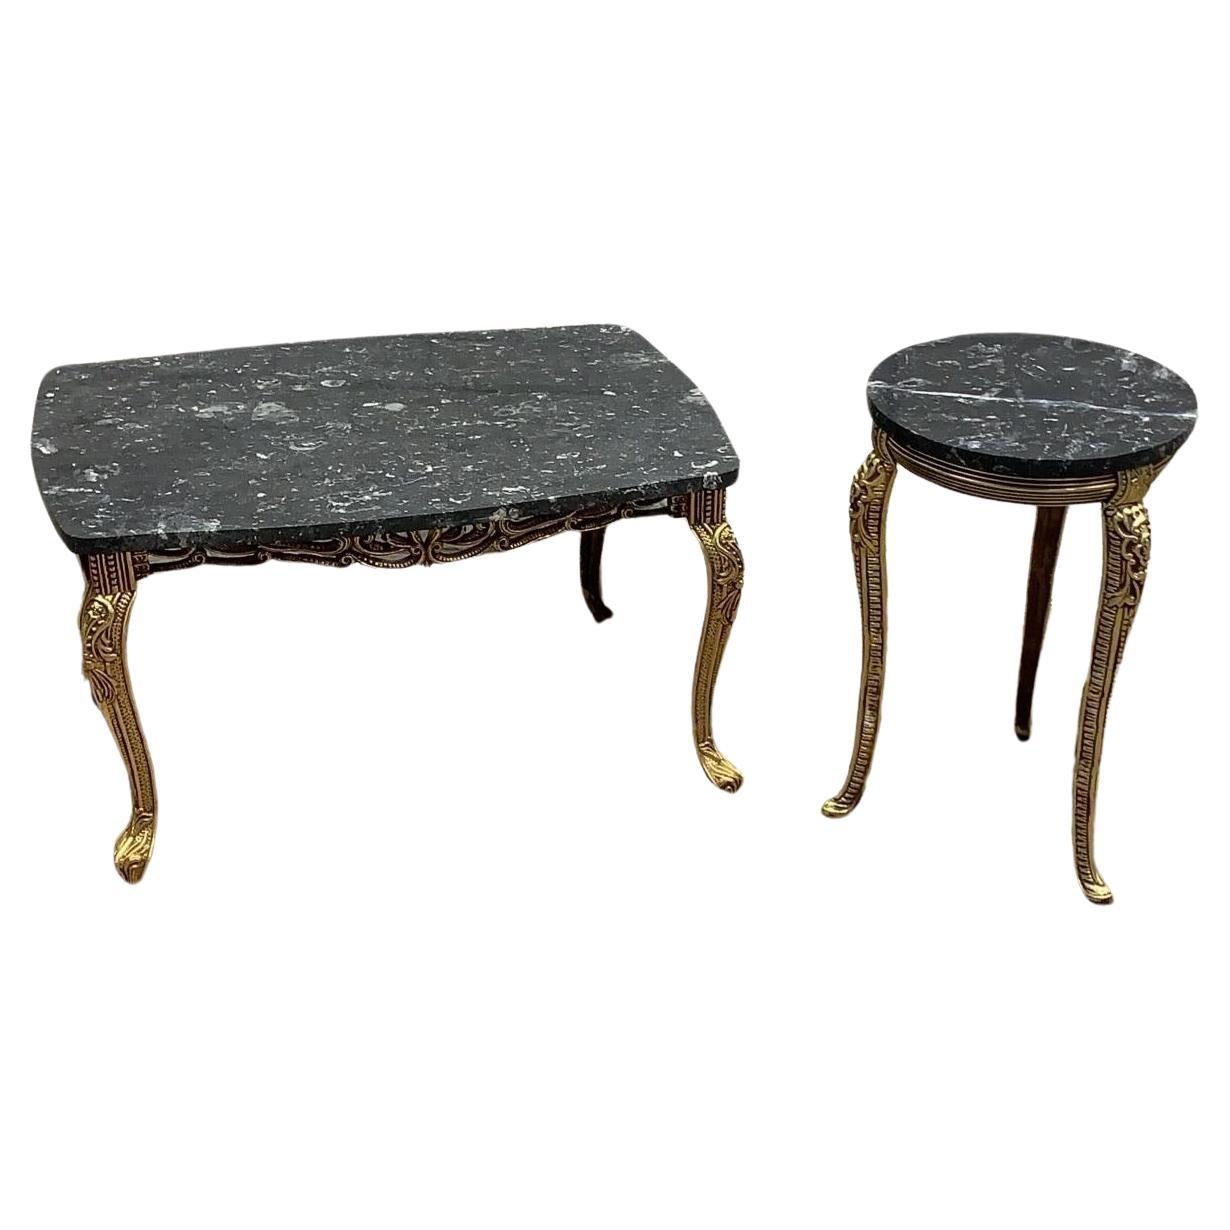 Table basse de style baroque français ornée de bronze doré avec plateau en marbre